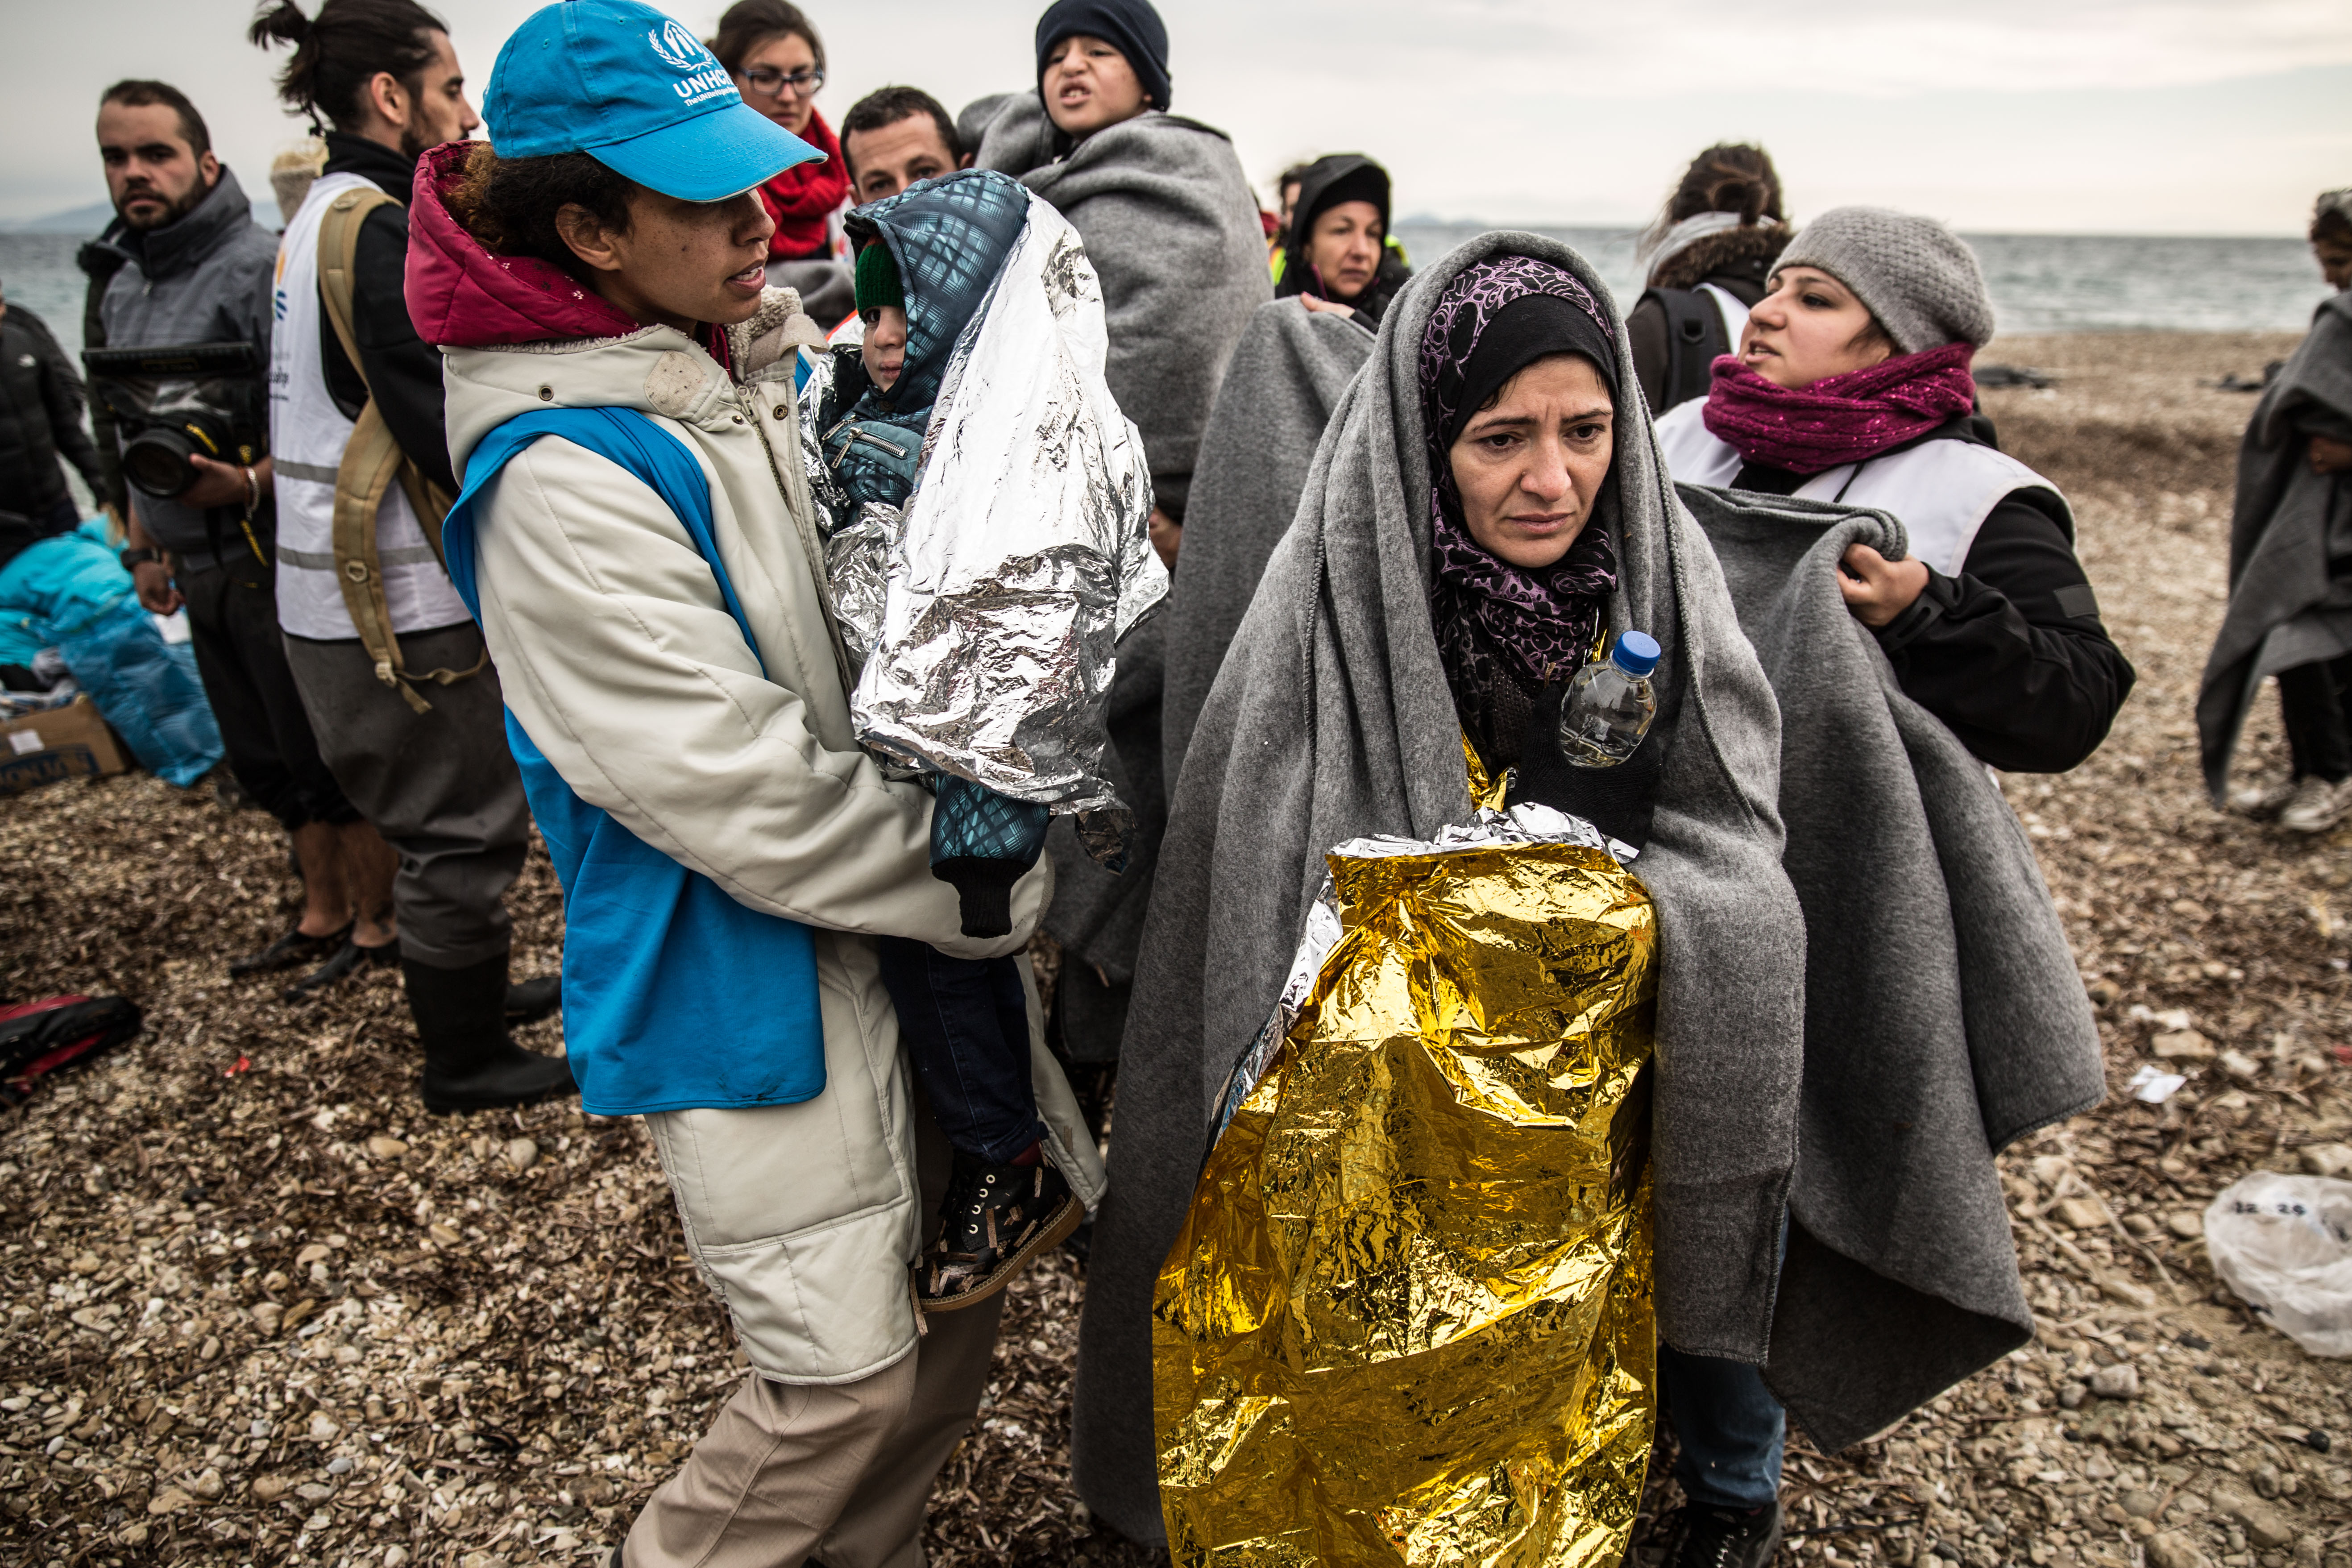  Grecia. Il personale dell'UNHCR assiste i rifugiati sulla costa